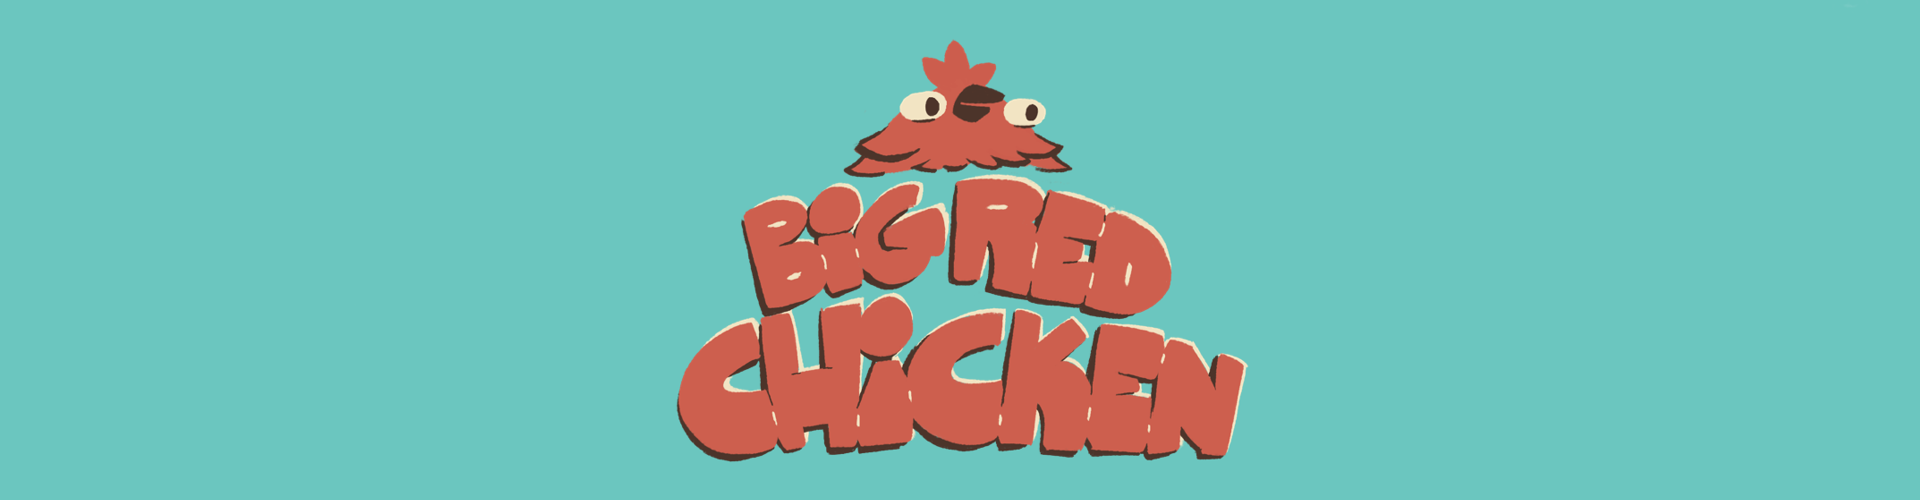 Big Red Chicken Arcade (60h jam version)